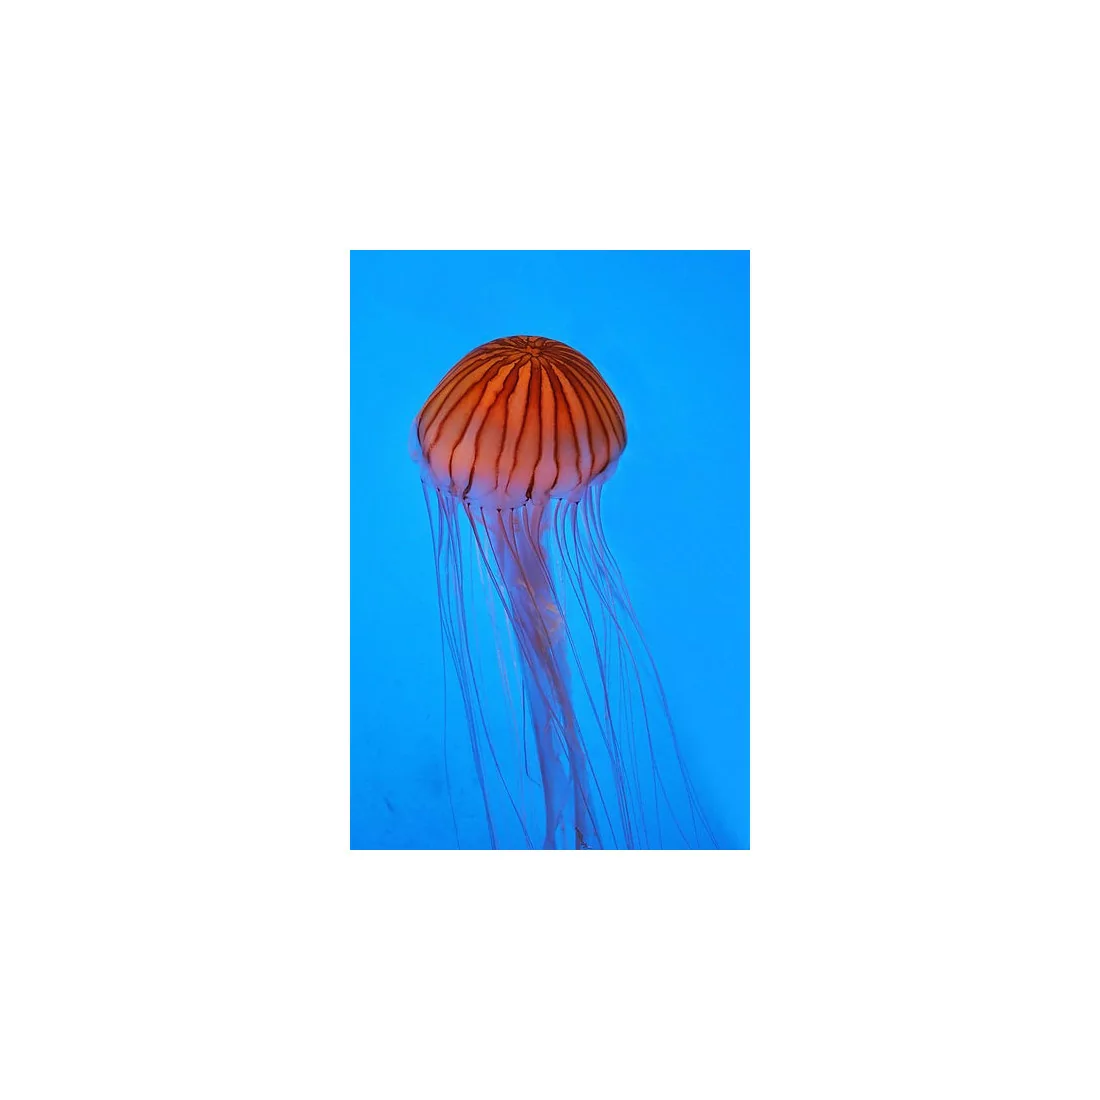 Chrysaora pacifica jellyfish set 2x